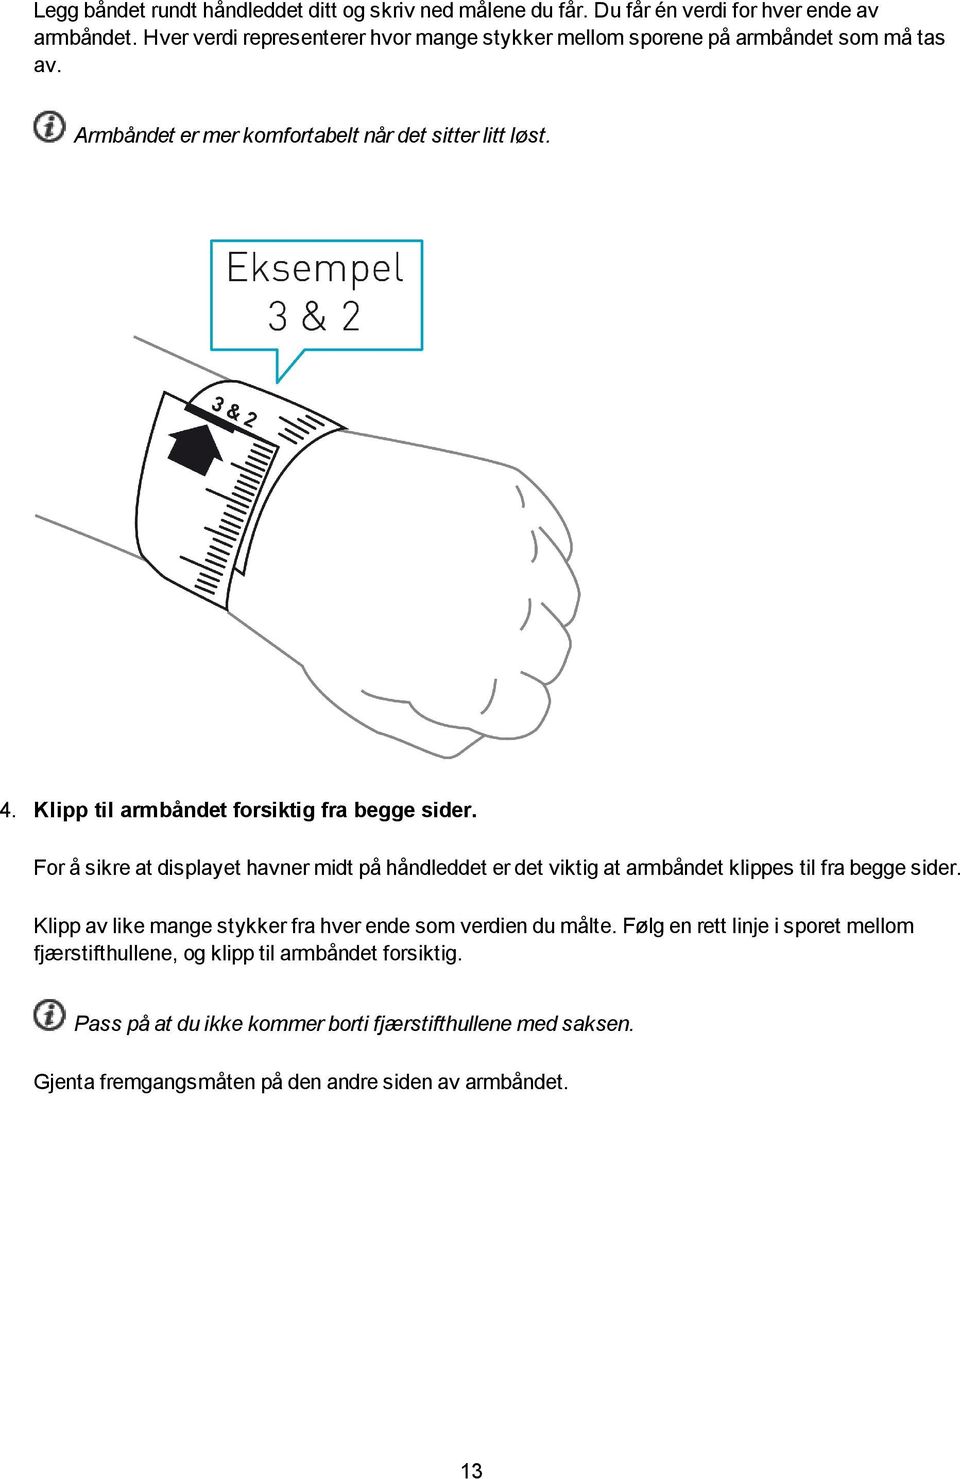 Klipp til armbåndet forsiktig fra begge sider. For å sikre at displayet havner midt på håndleddet er det viktig at armbåndet klippes til fra begge sider.